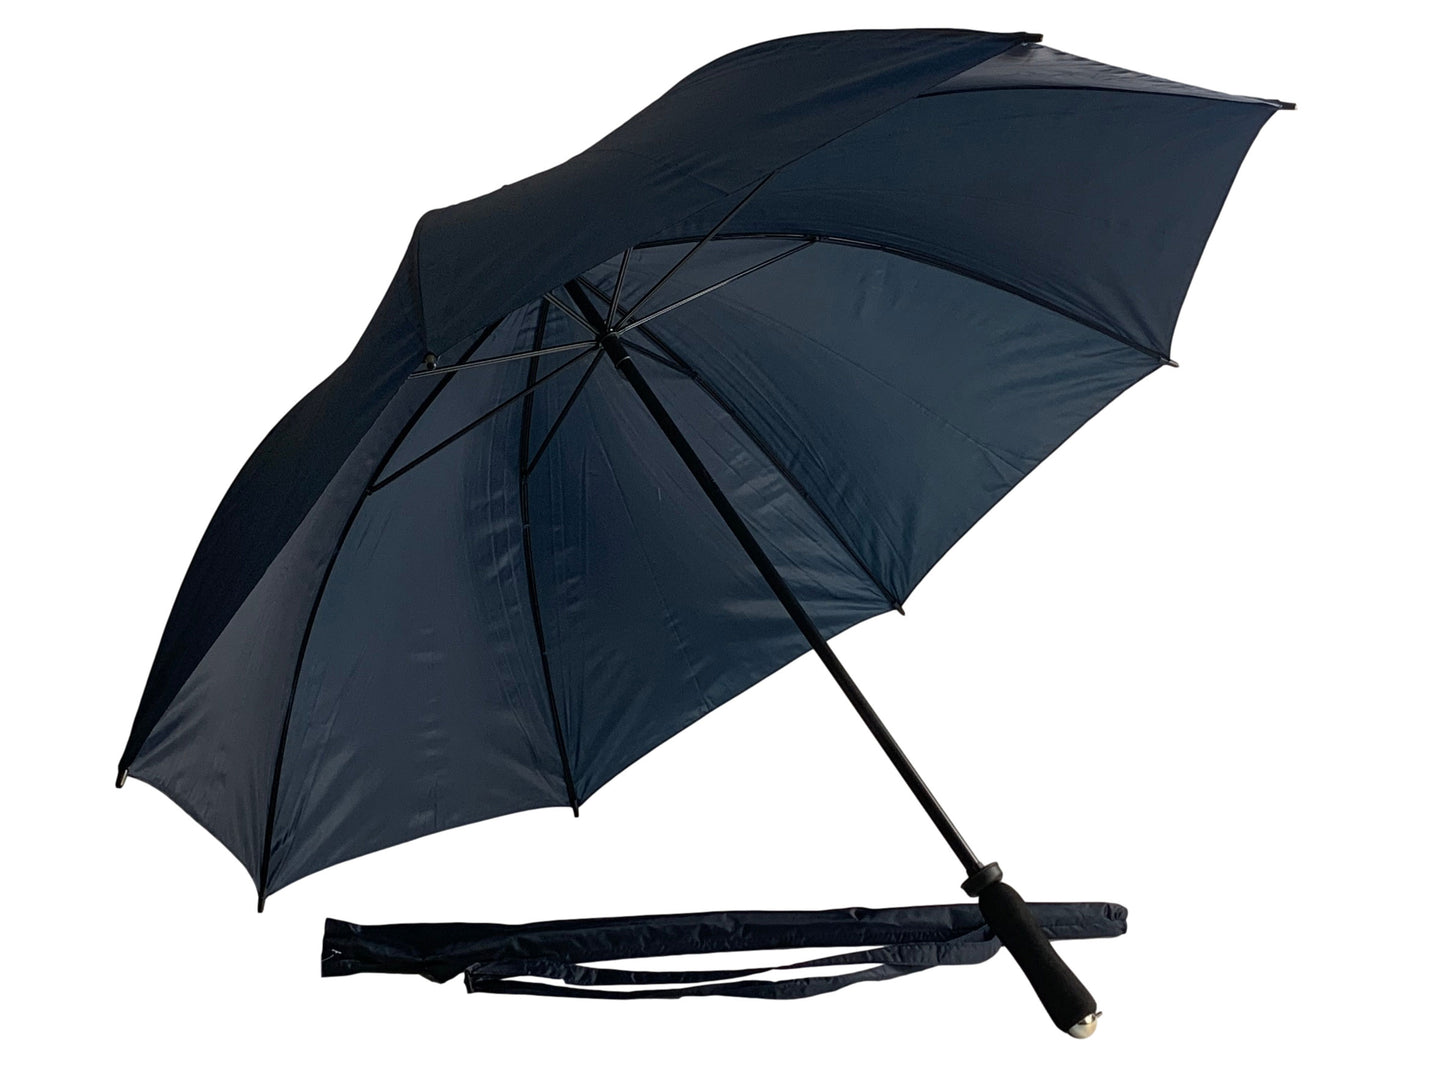 Μπλε μαρίν ομπρέλα βροχής, συνοδείας, μακριά, με 8 διπλές ακτίνες.